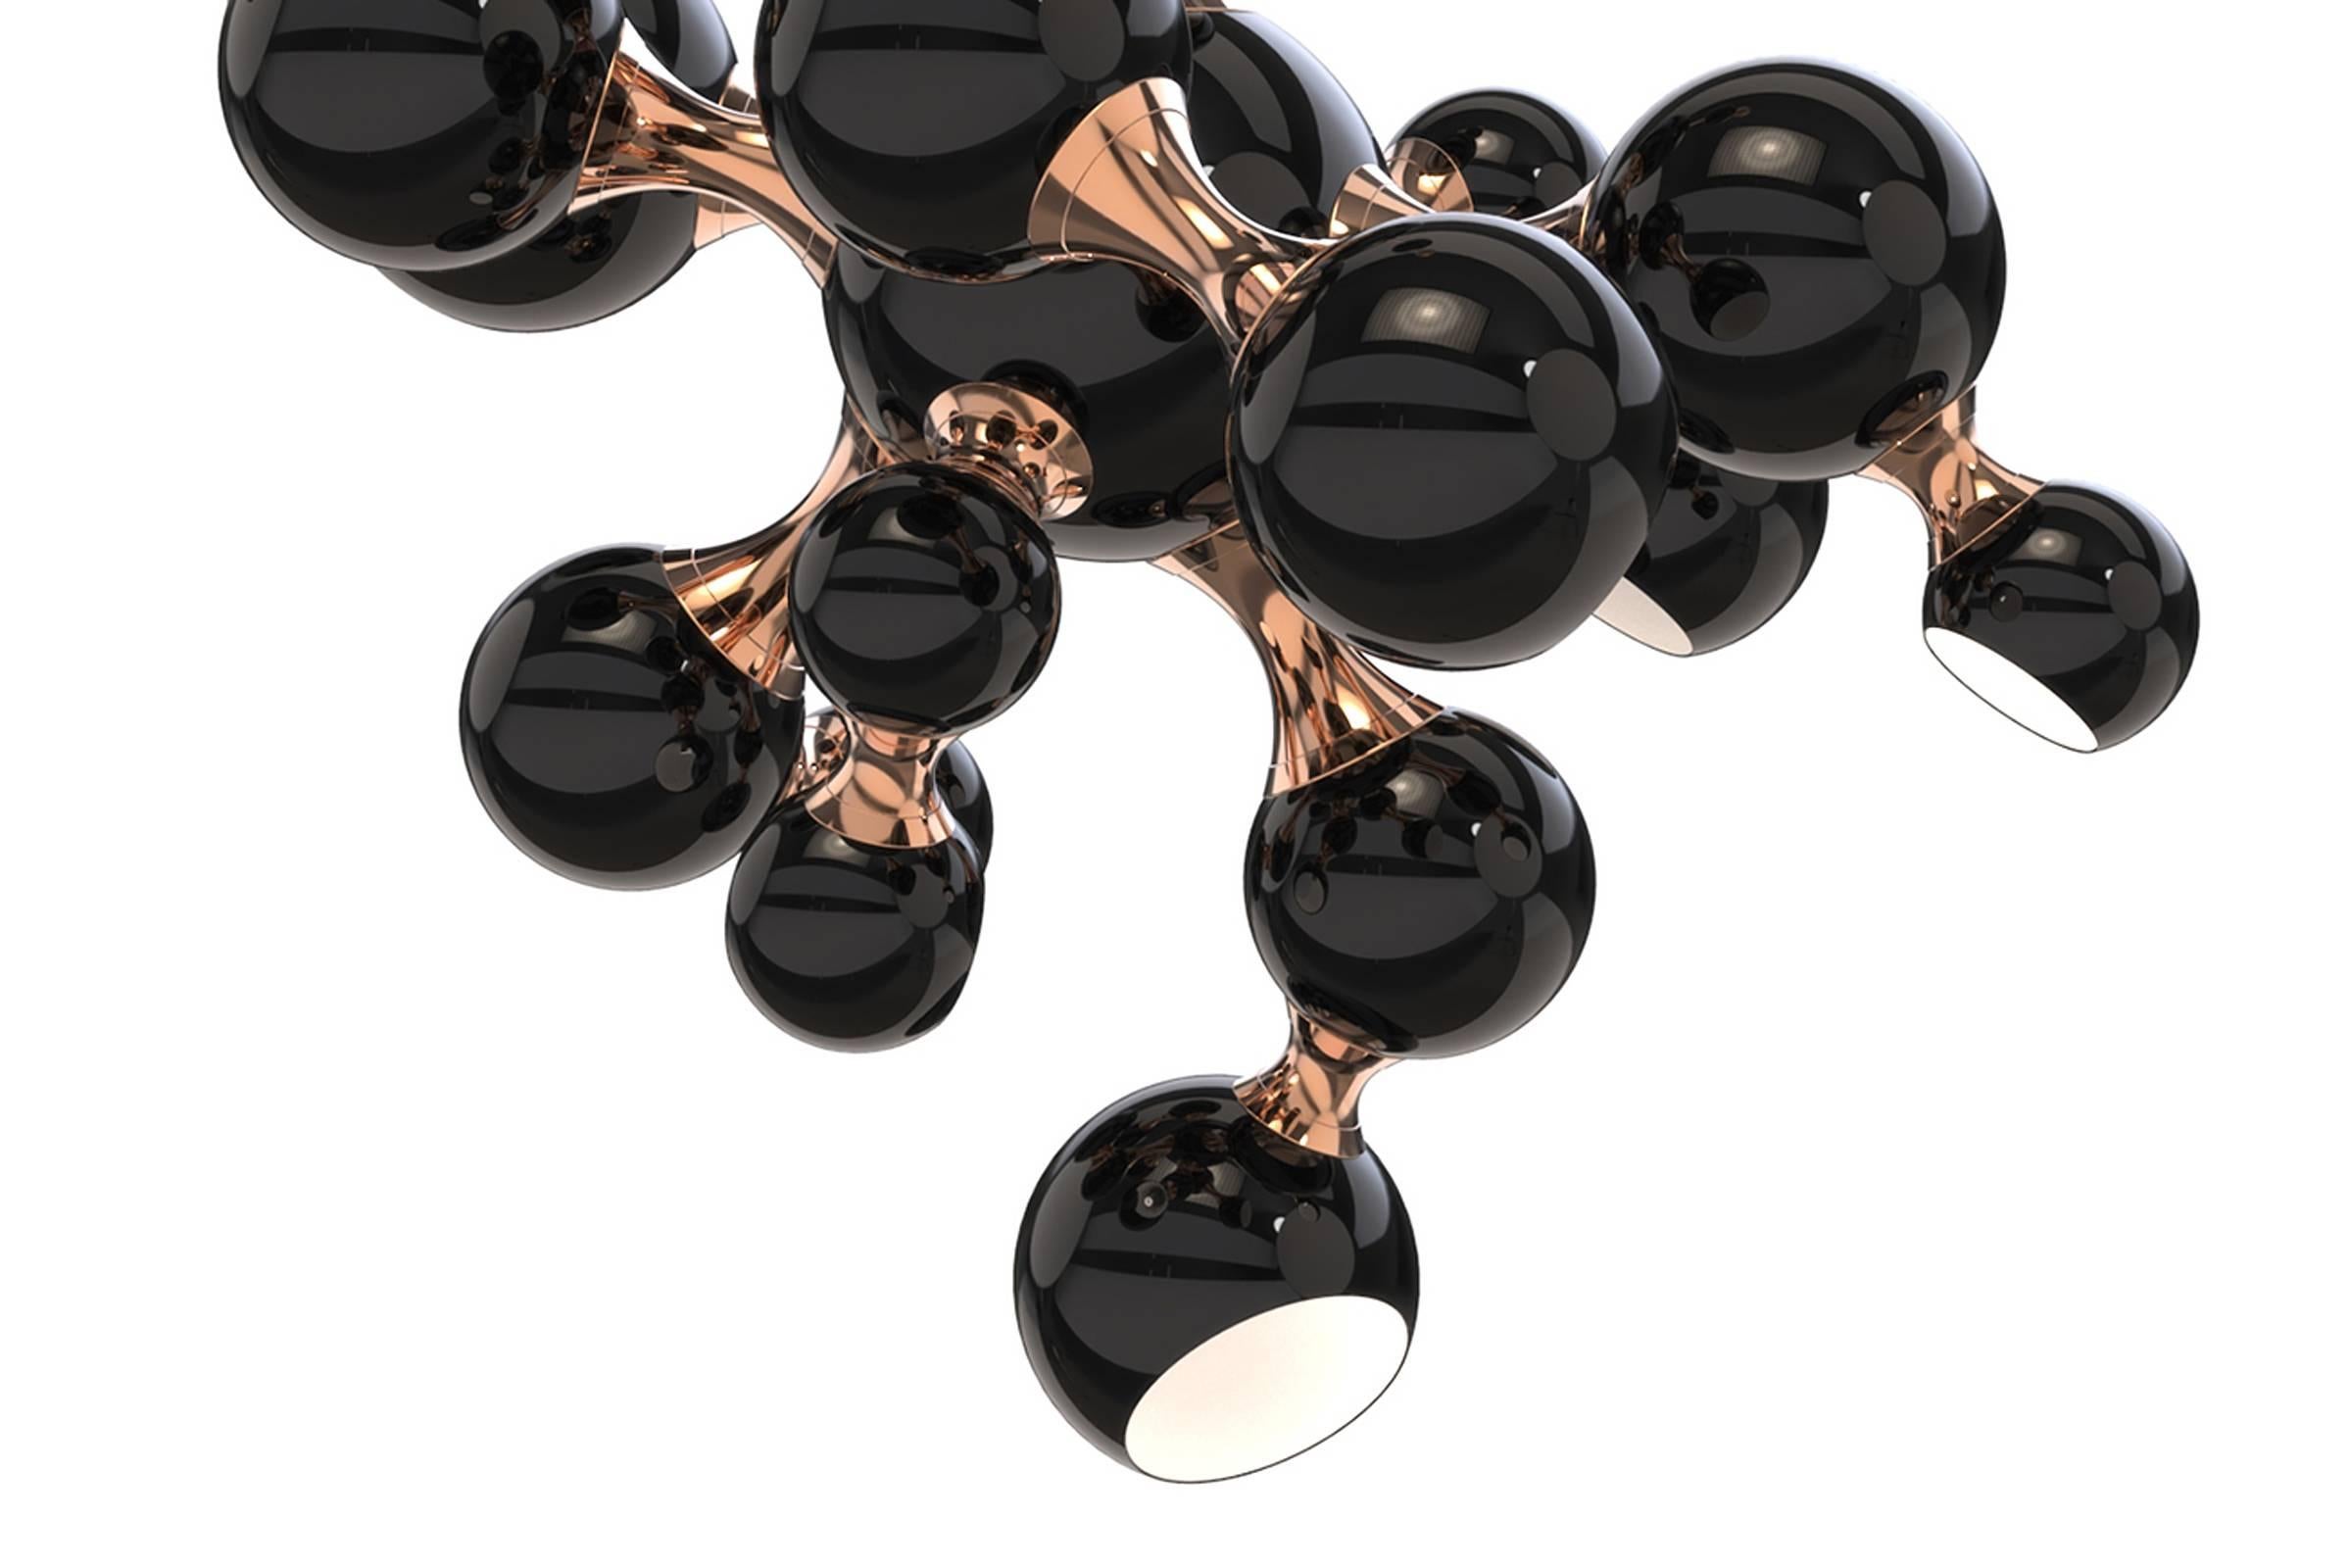 Kronleuchter schwarz Perle mit Aluminium und Messing Struktur
in Kupferausführung mit glänzenden schwarzen Kugeln.
Schirme in glänzendem Schwarz und goldener Pulverfarbe innen.
Inklusive 8 x G9-Glühbirnen.
Auch mit Aluminium- und Messingstruktur